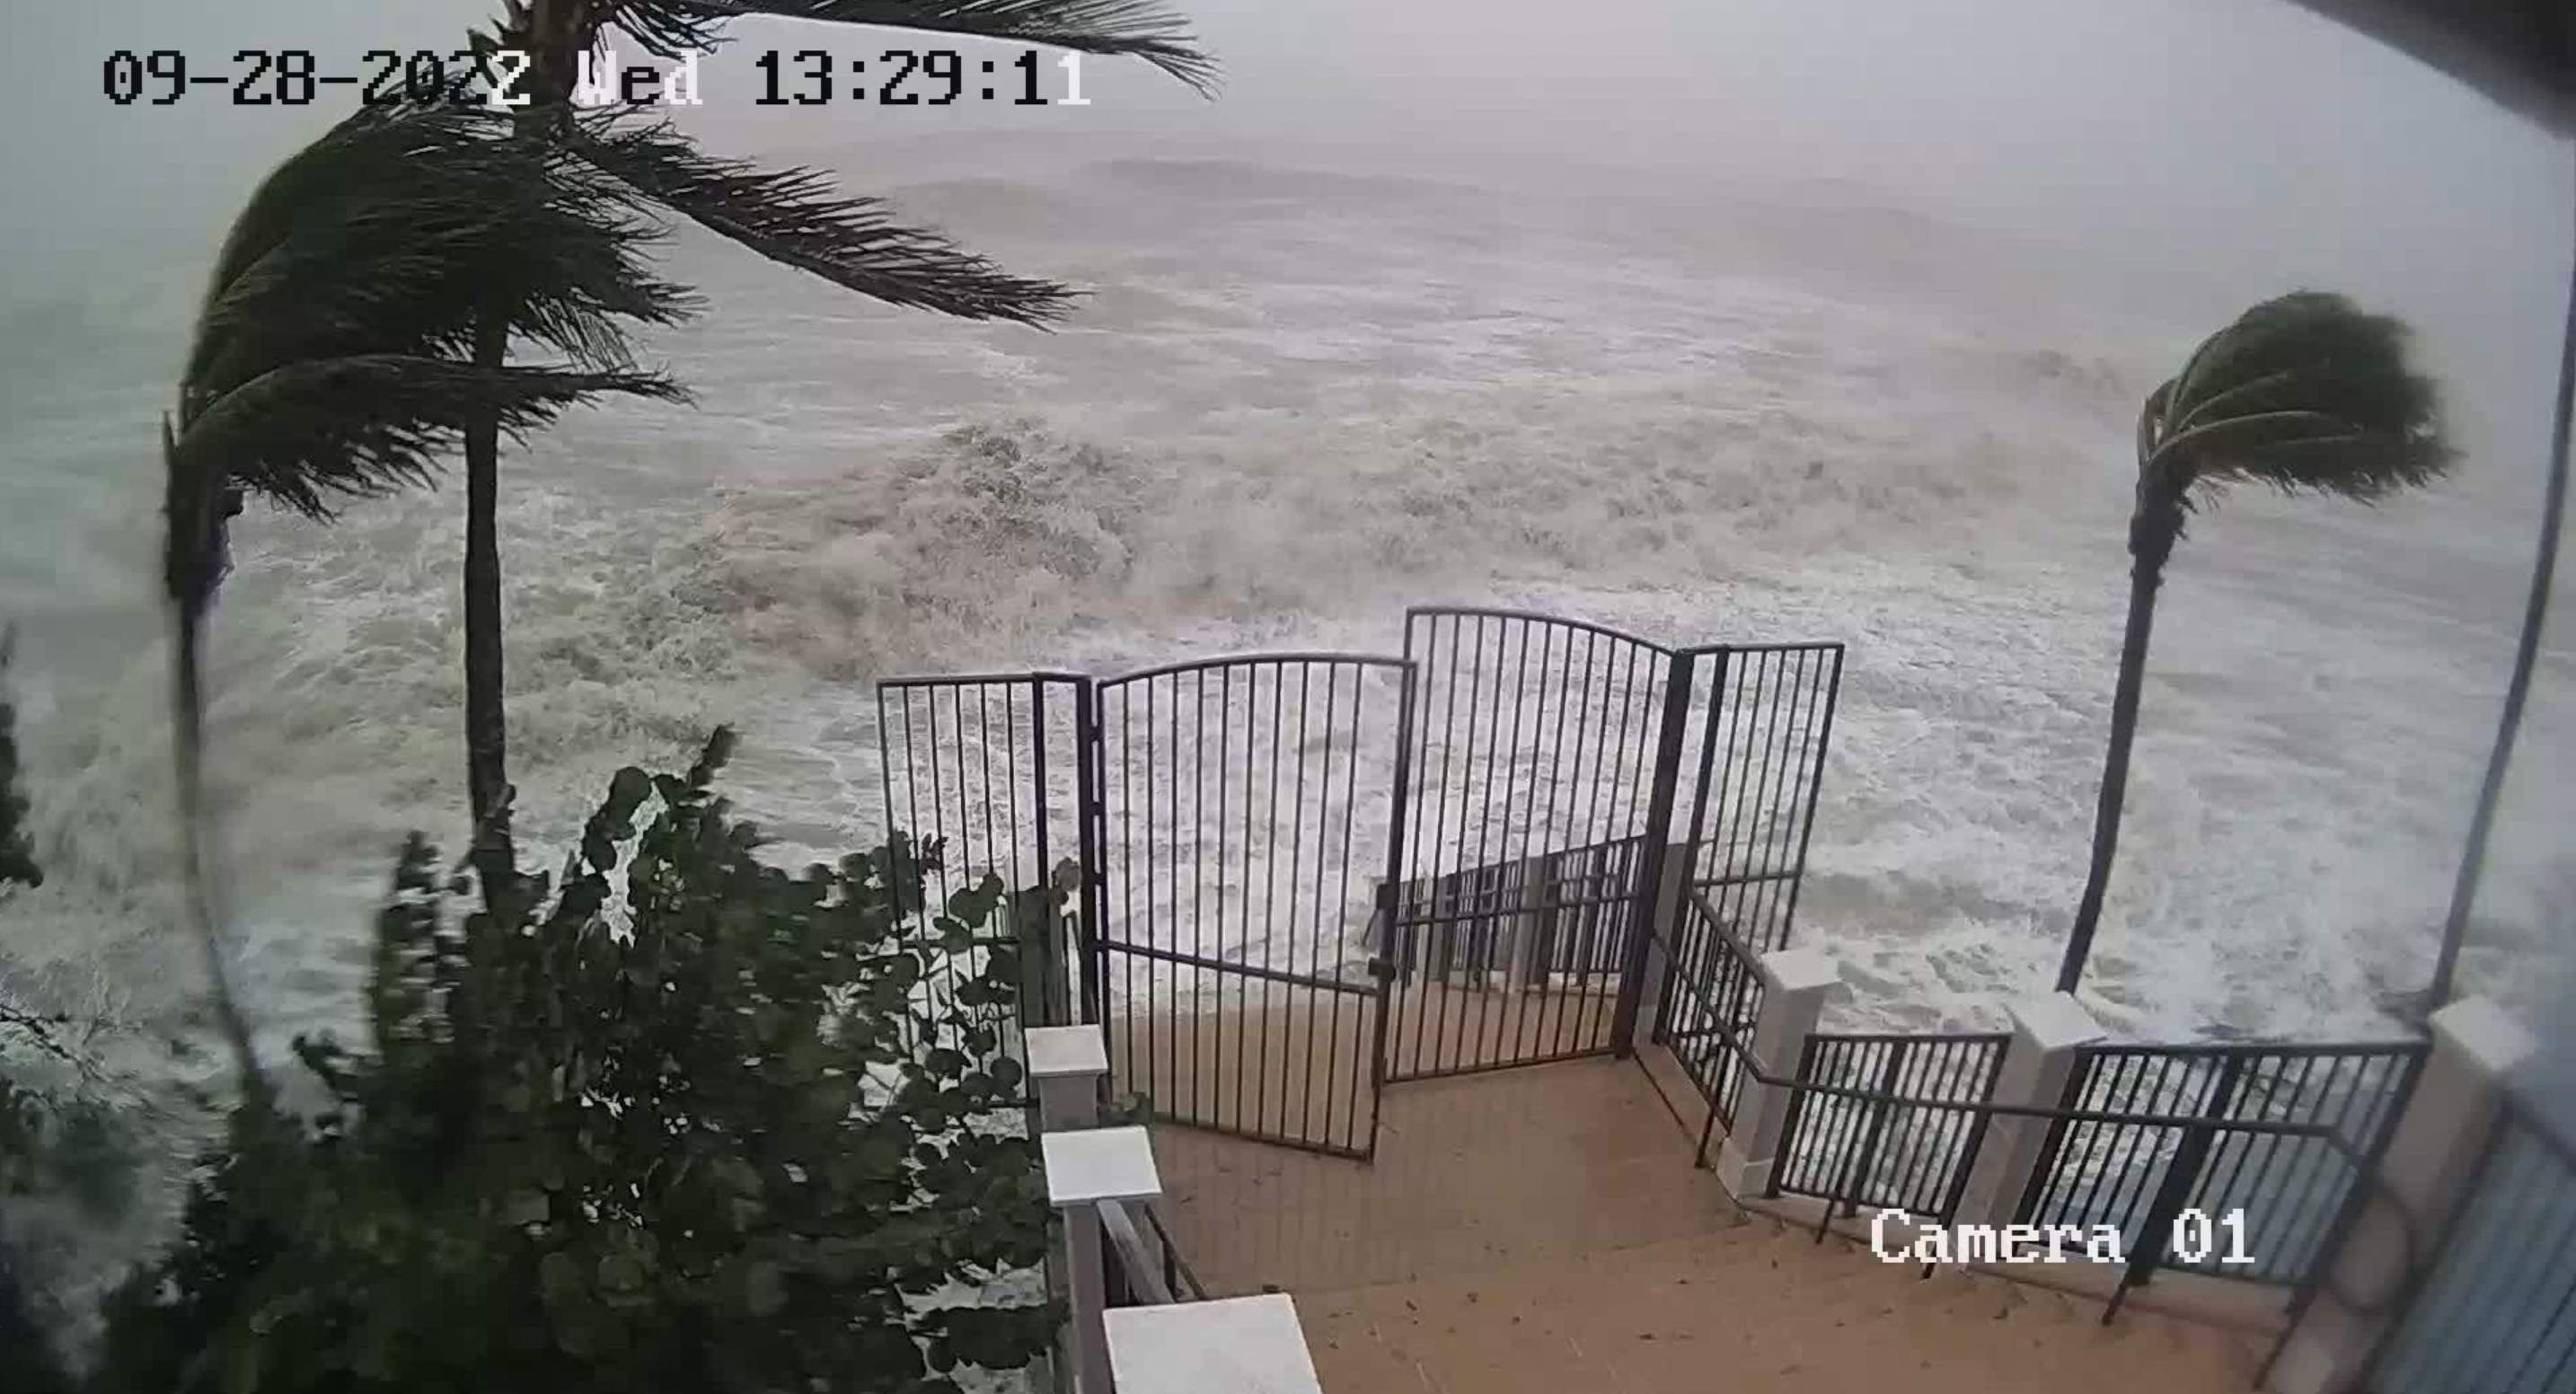 Abb. 5: Auch vor der Bonita Springs macht die Sturmflut nicht Halt!! (Bild: https://526540bdc27a7.click2stream.com/)